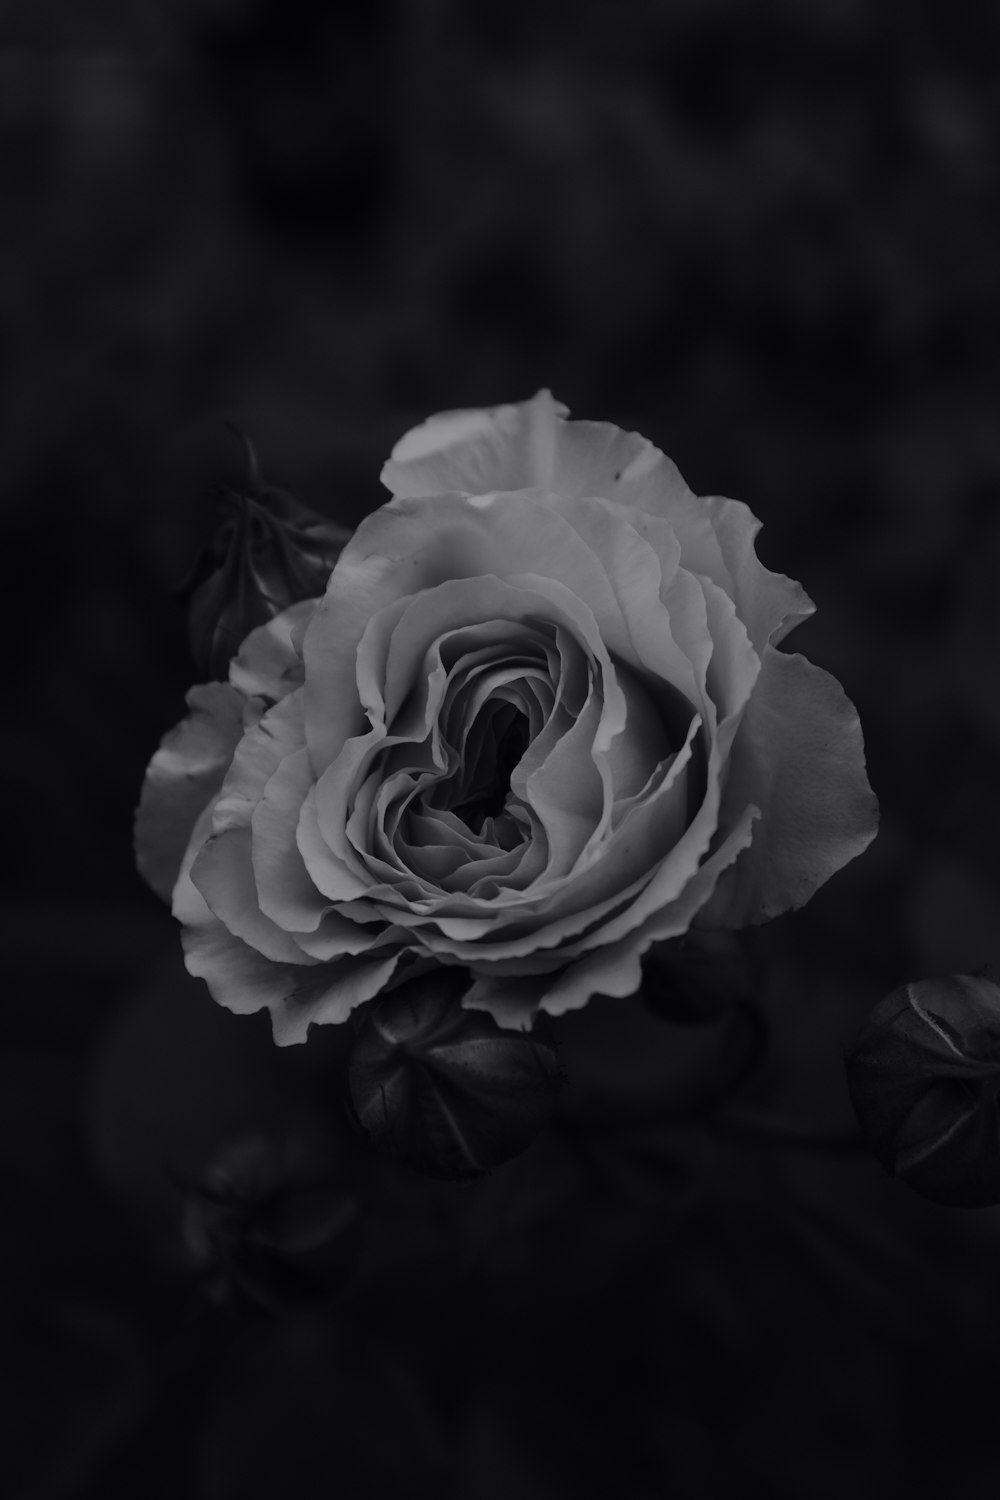 rose blanche sur fond noir photo – Photo Gris Gratuite sur Unsplash